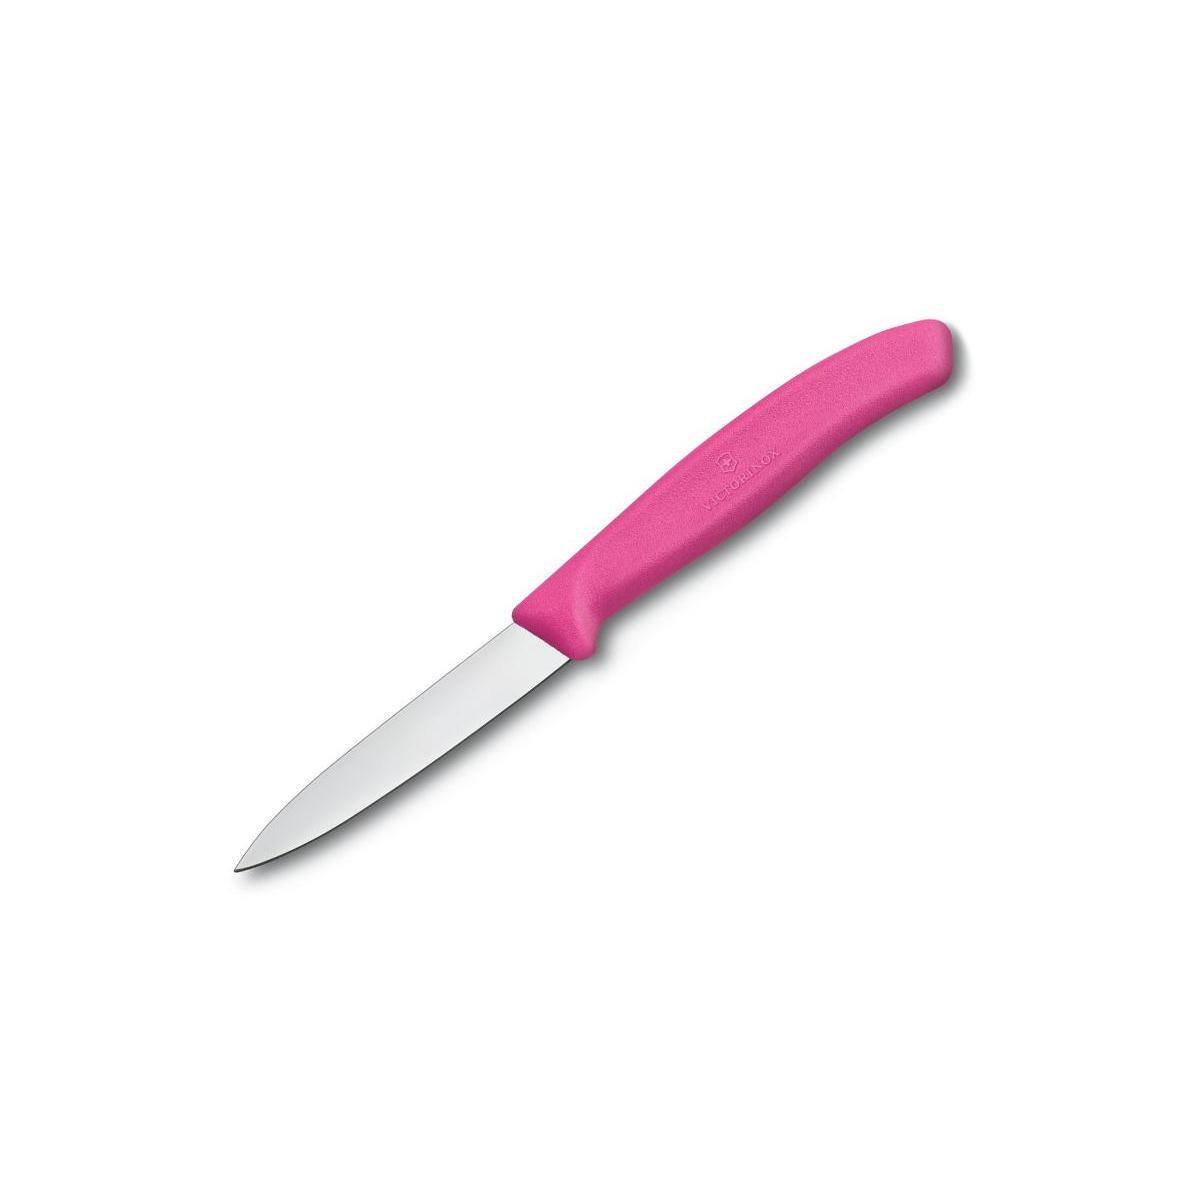 Victorinox nóż do obierania 8cm gładki różowy